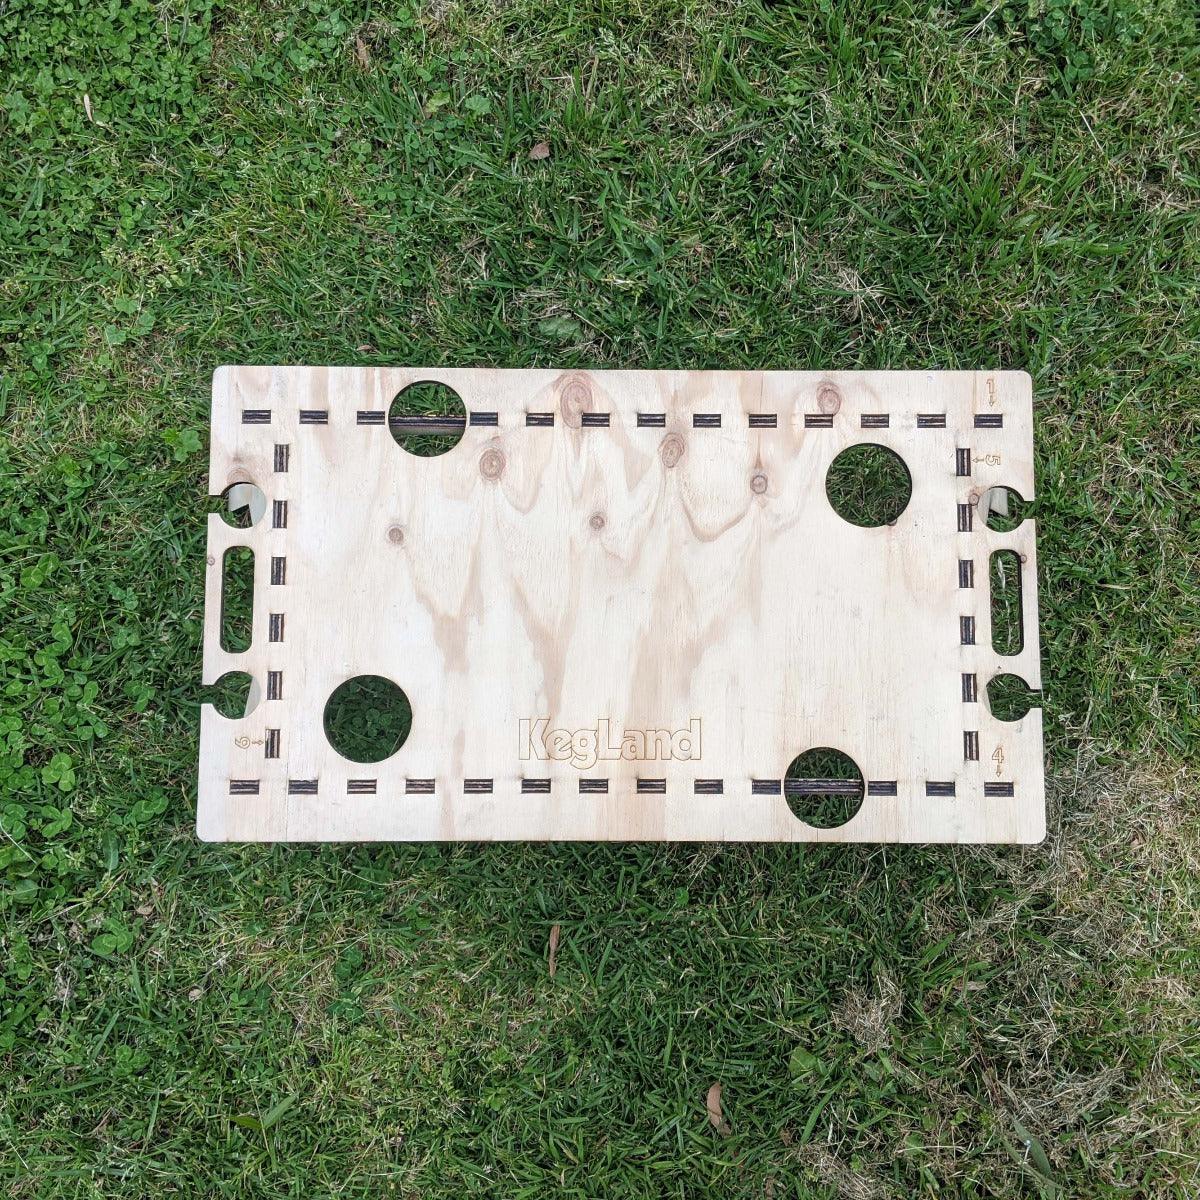 LaserCut - Mini Folding/Foldable Summer Picnic Table - 12mm Pine Ply 60cm x 40cm - KegLand